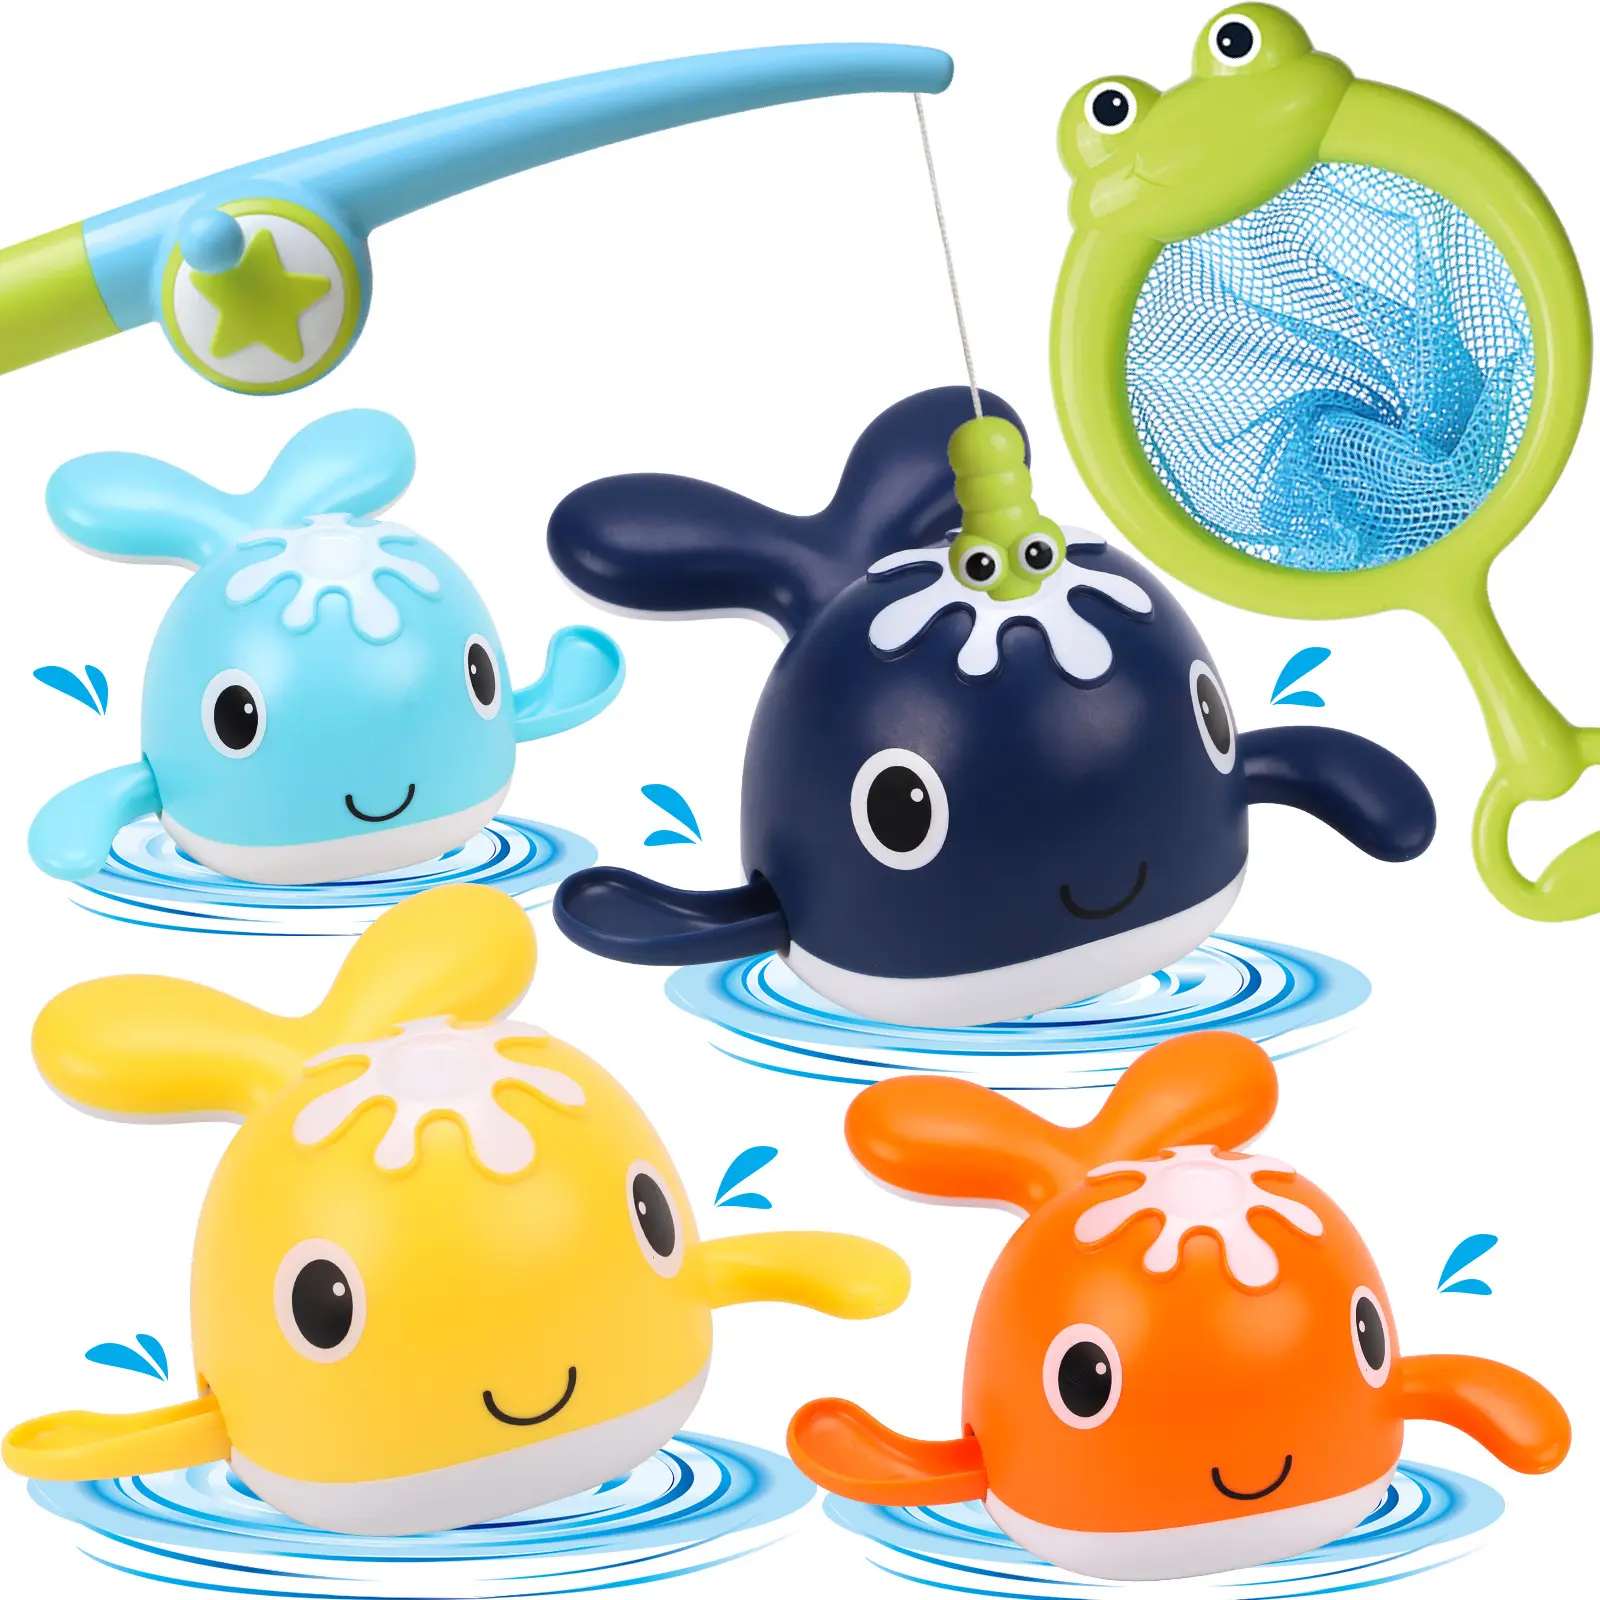 لعبة الصيد المغناطيسية للأطفال مكونة من 6 قطع تحتوي على 2 قضيب صيد 4 Whale لعبة الحمام الملفوفة لعبة حوض استحمام مجانية لعبة لحديثي الولادة ألعاب حمامات السباحة للأطفال